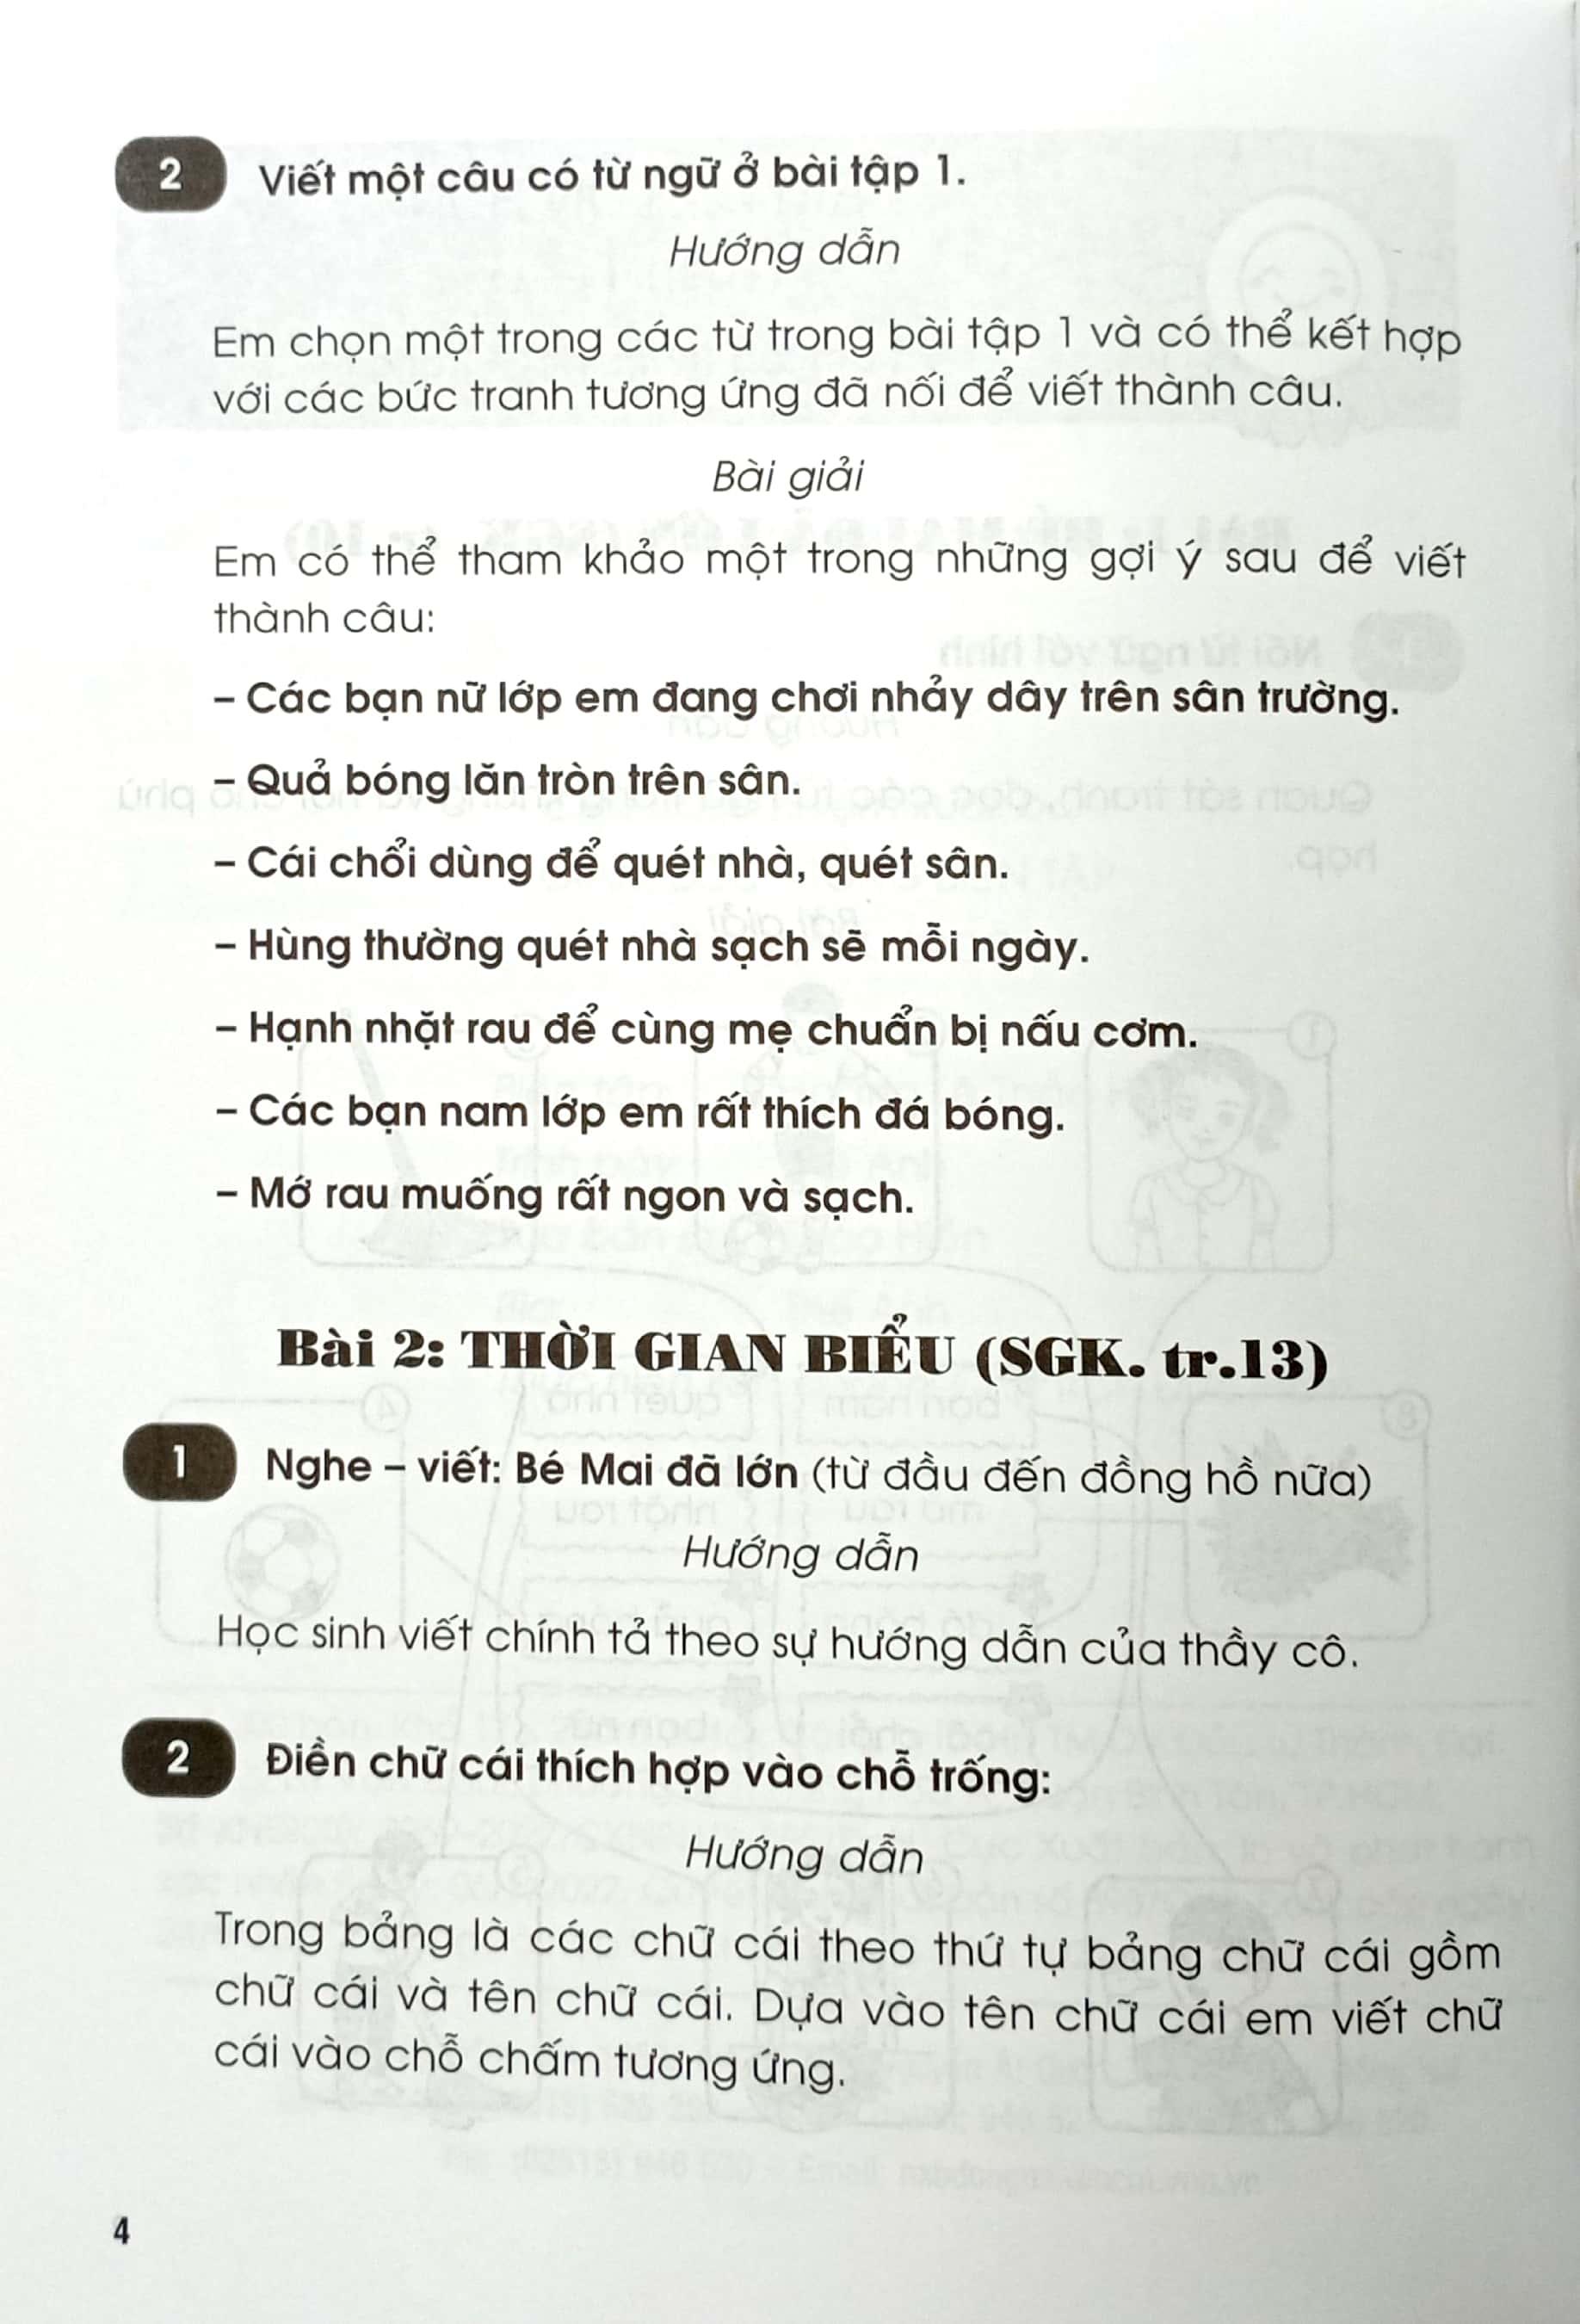 Giải Vở Bài Tập Tiếng Việt Lớp 2 - Tập 1 (Chân Trời Sáng Tạo) (2022)